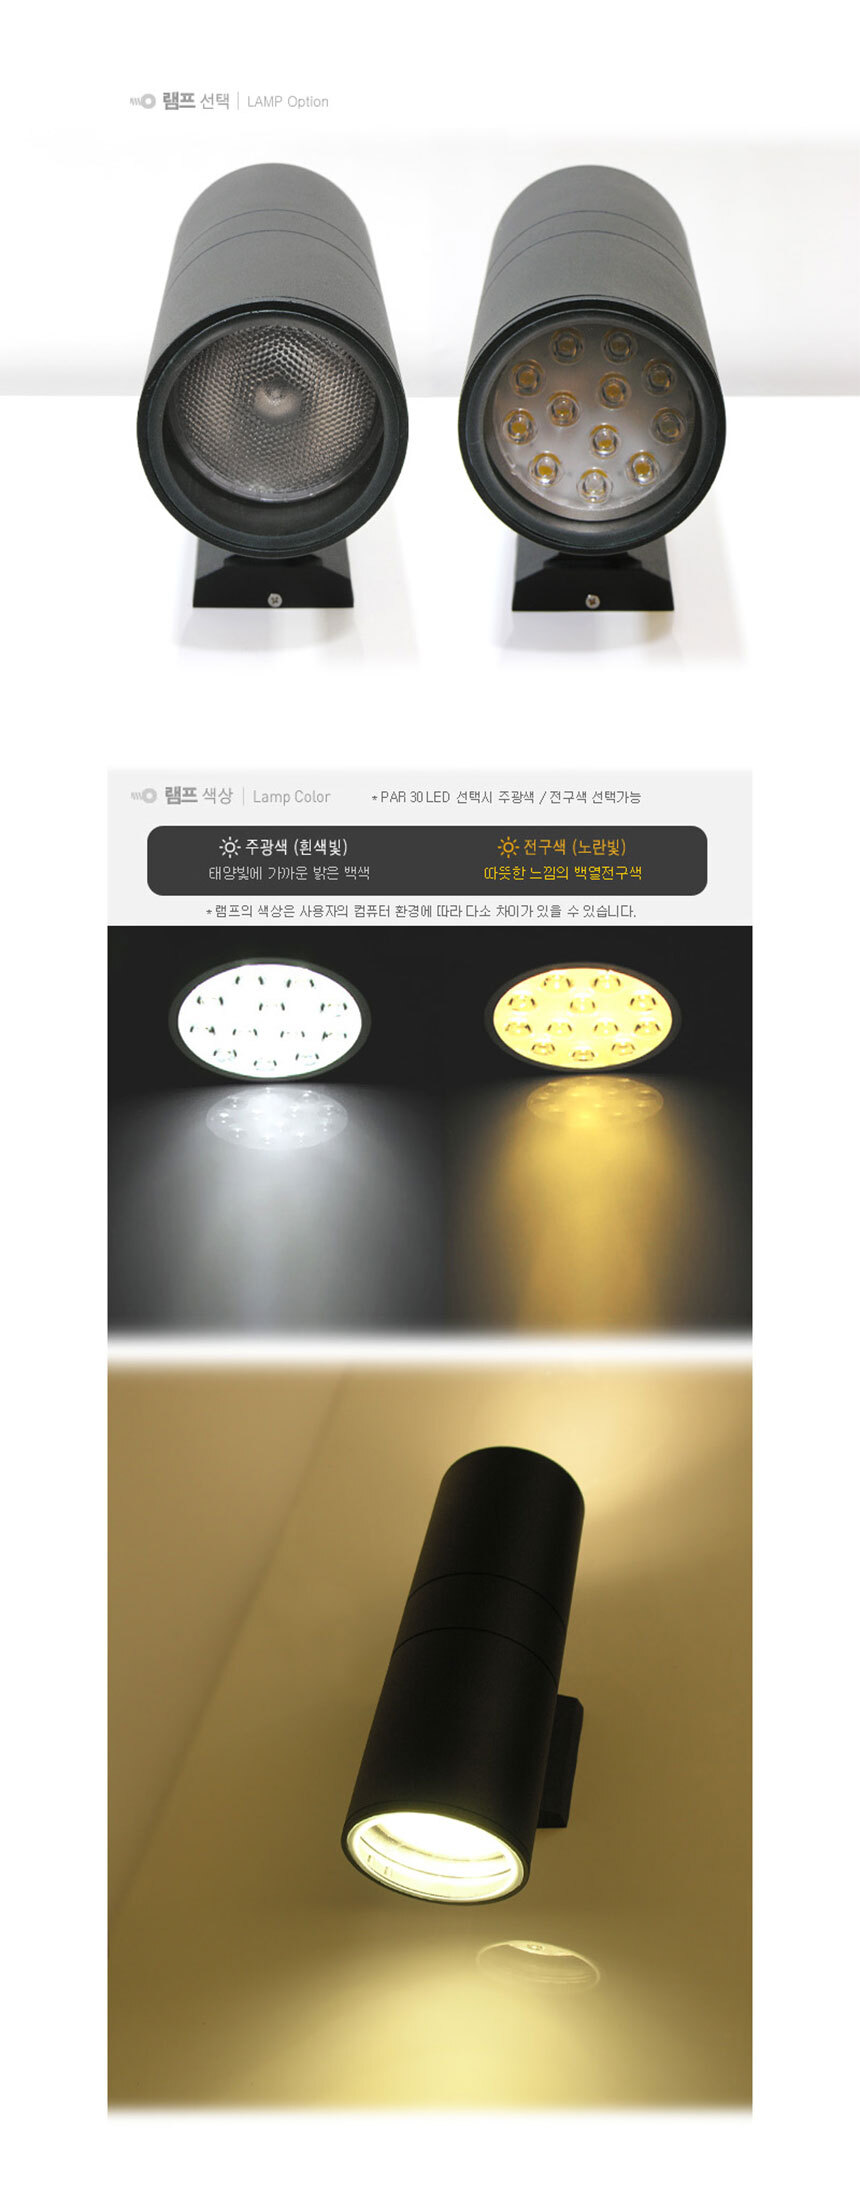 
램프선택 LAMP Option
램프색상 Lamp Color PAR 30 LED 선택시 주광색/ 전구색 선택가능
주광색(흰색빛) 태양빛에 가까운 밝은 백색 전구색(노란빛) 따듯한 느낌의 백열전구색
램프의 색상은 사용자의 컴퓨터 환경에 따라 다소 차이가 있을 수 있습니다
